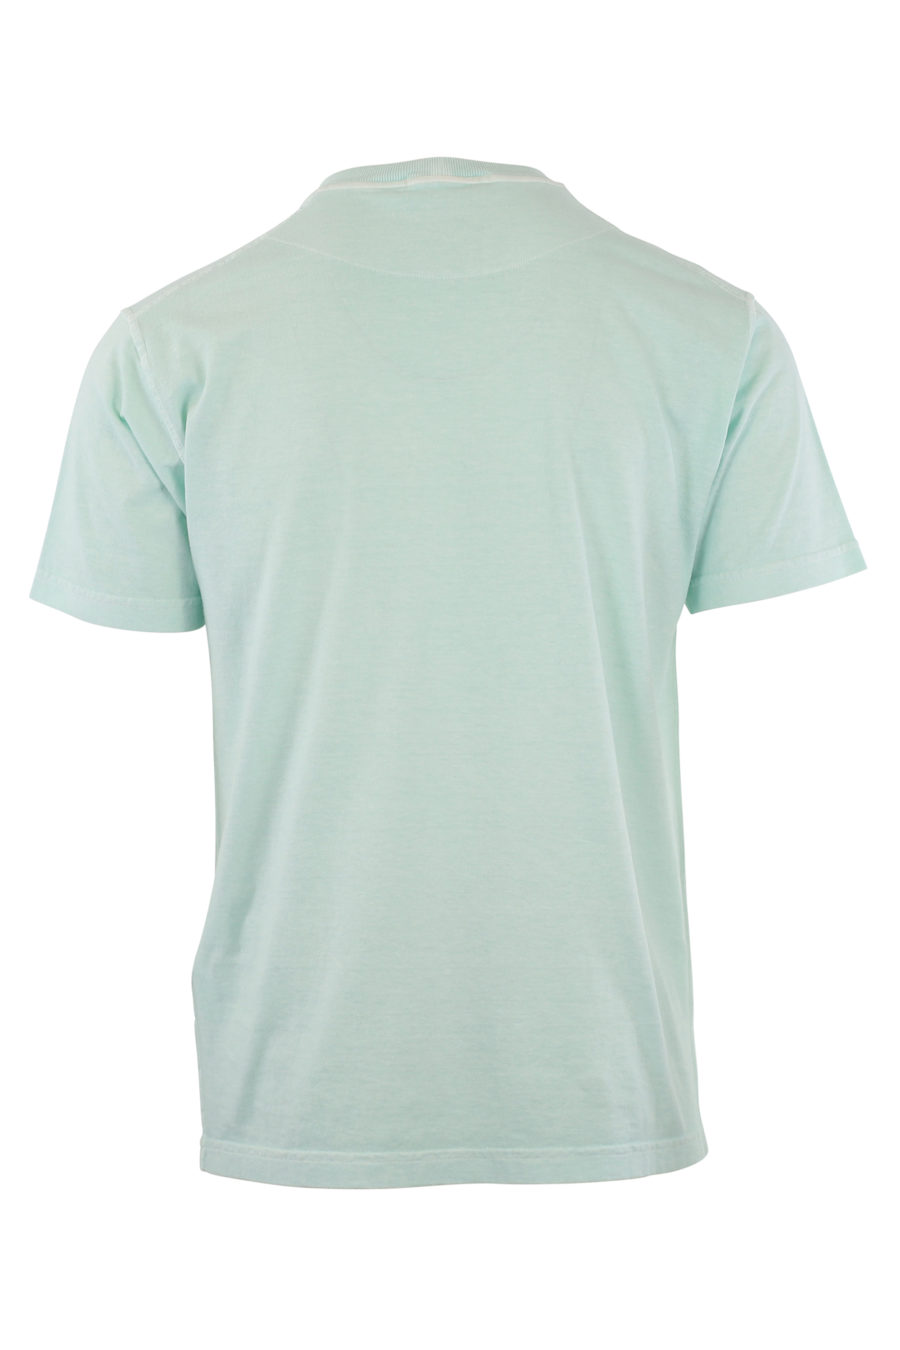 T-shirt azul com logótipo - IMG 9641